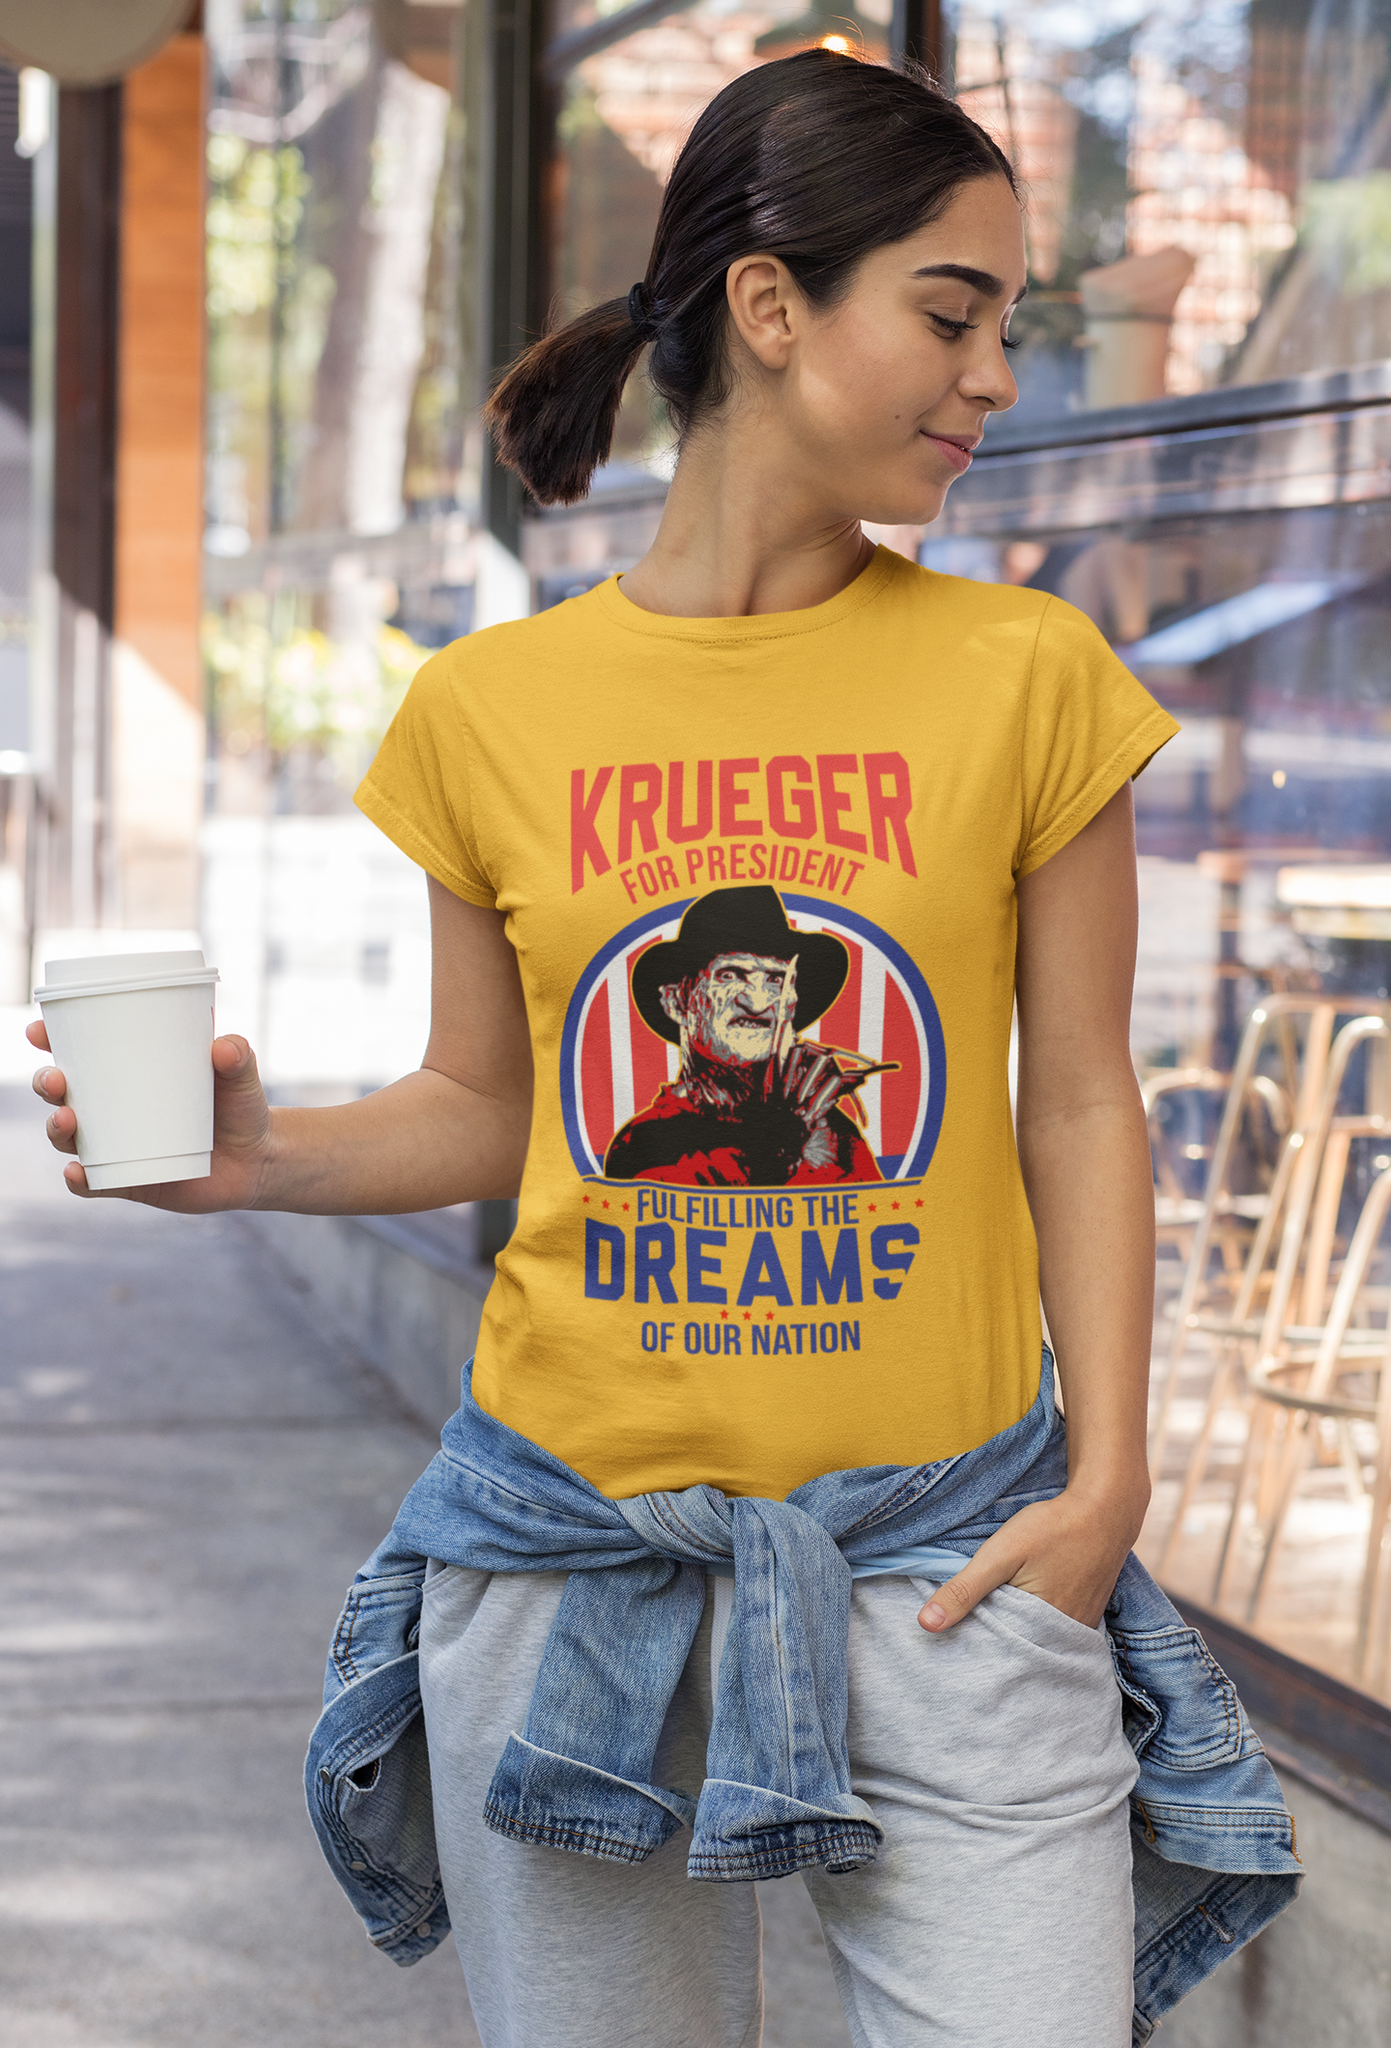 Nightmare On Elm Street Shirt, Freddy Krueger For President 2024 Shirt, Fullfilling The Dreams Of Our Nation Shirt